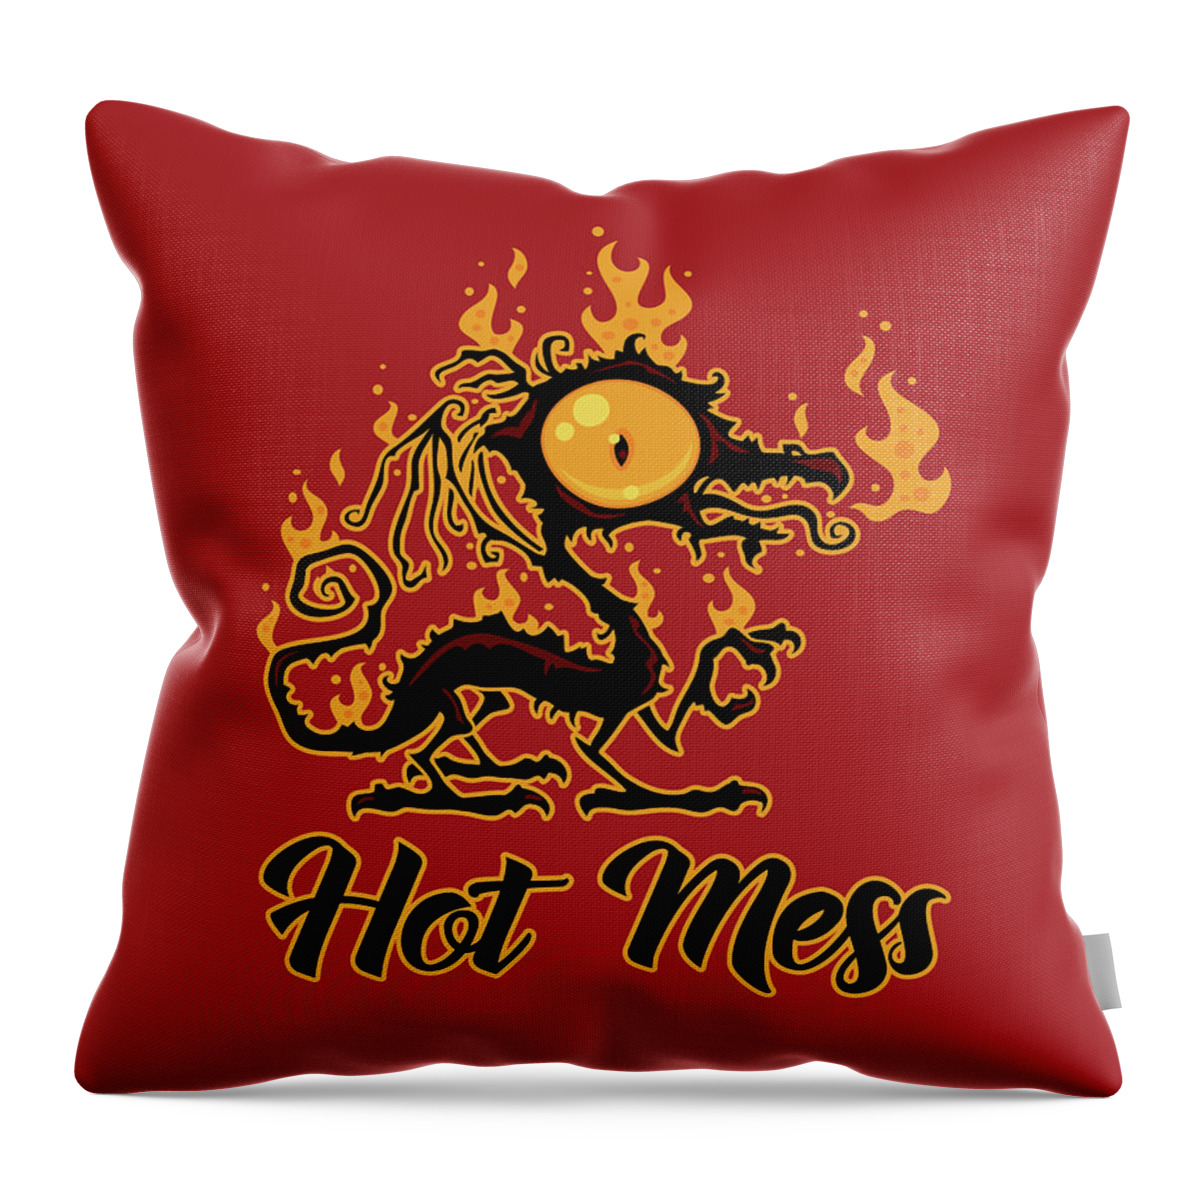 Black Throw Pillow featuring the digital art Hot Mess Crispy Dragon by John Schwegel